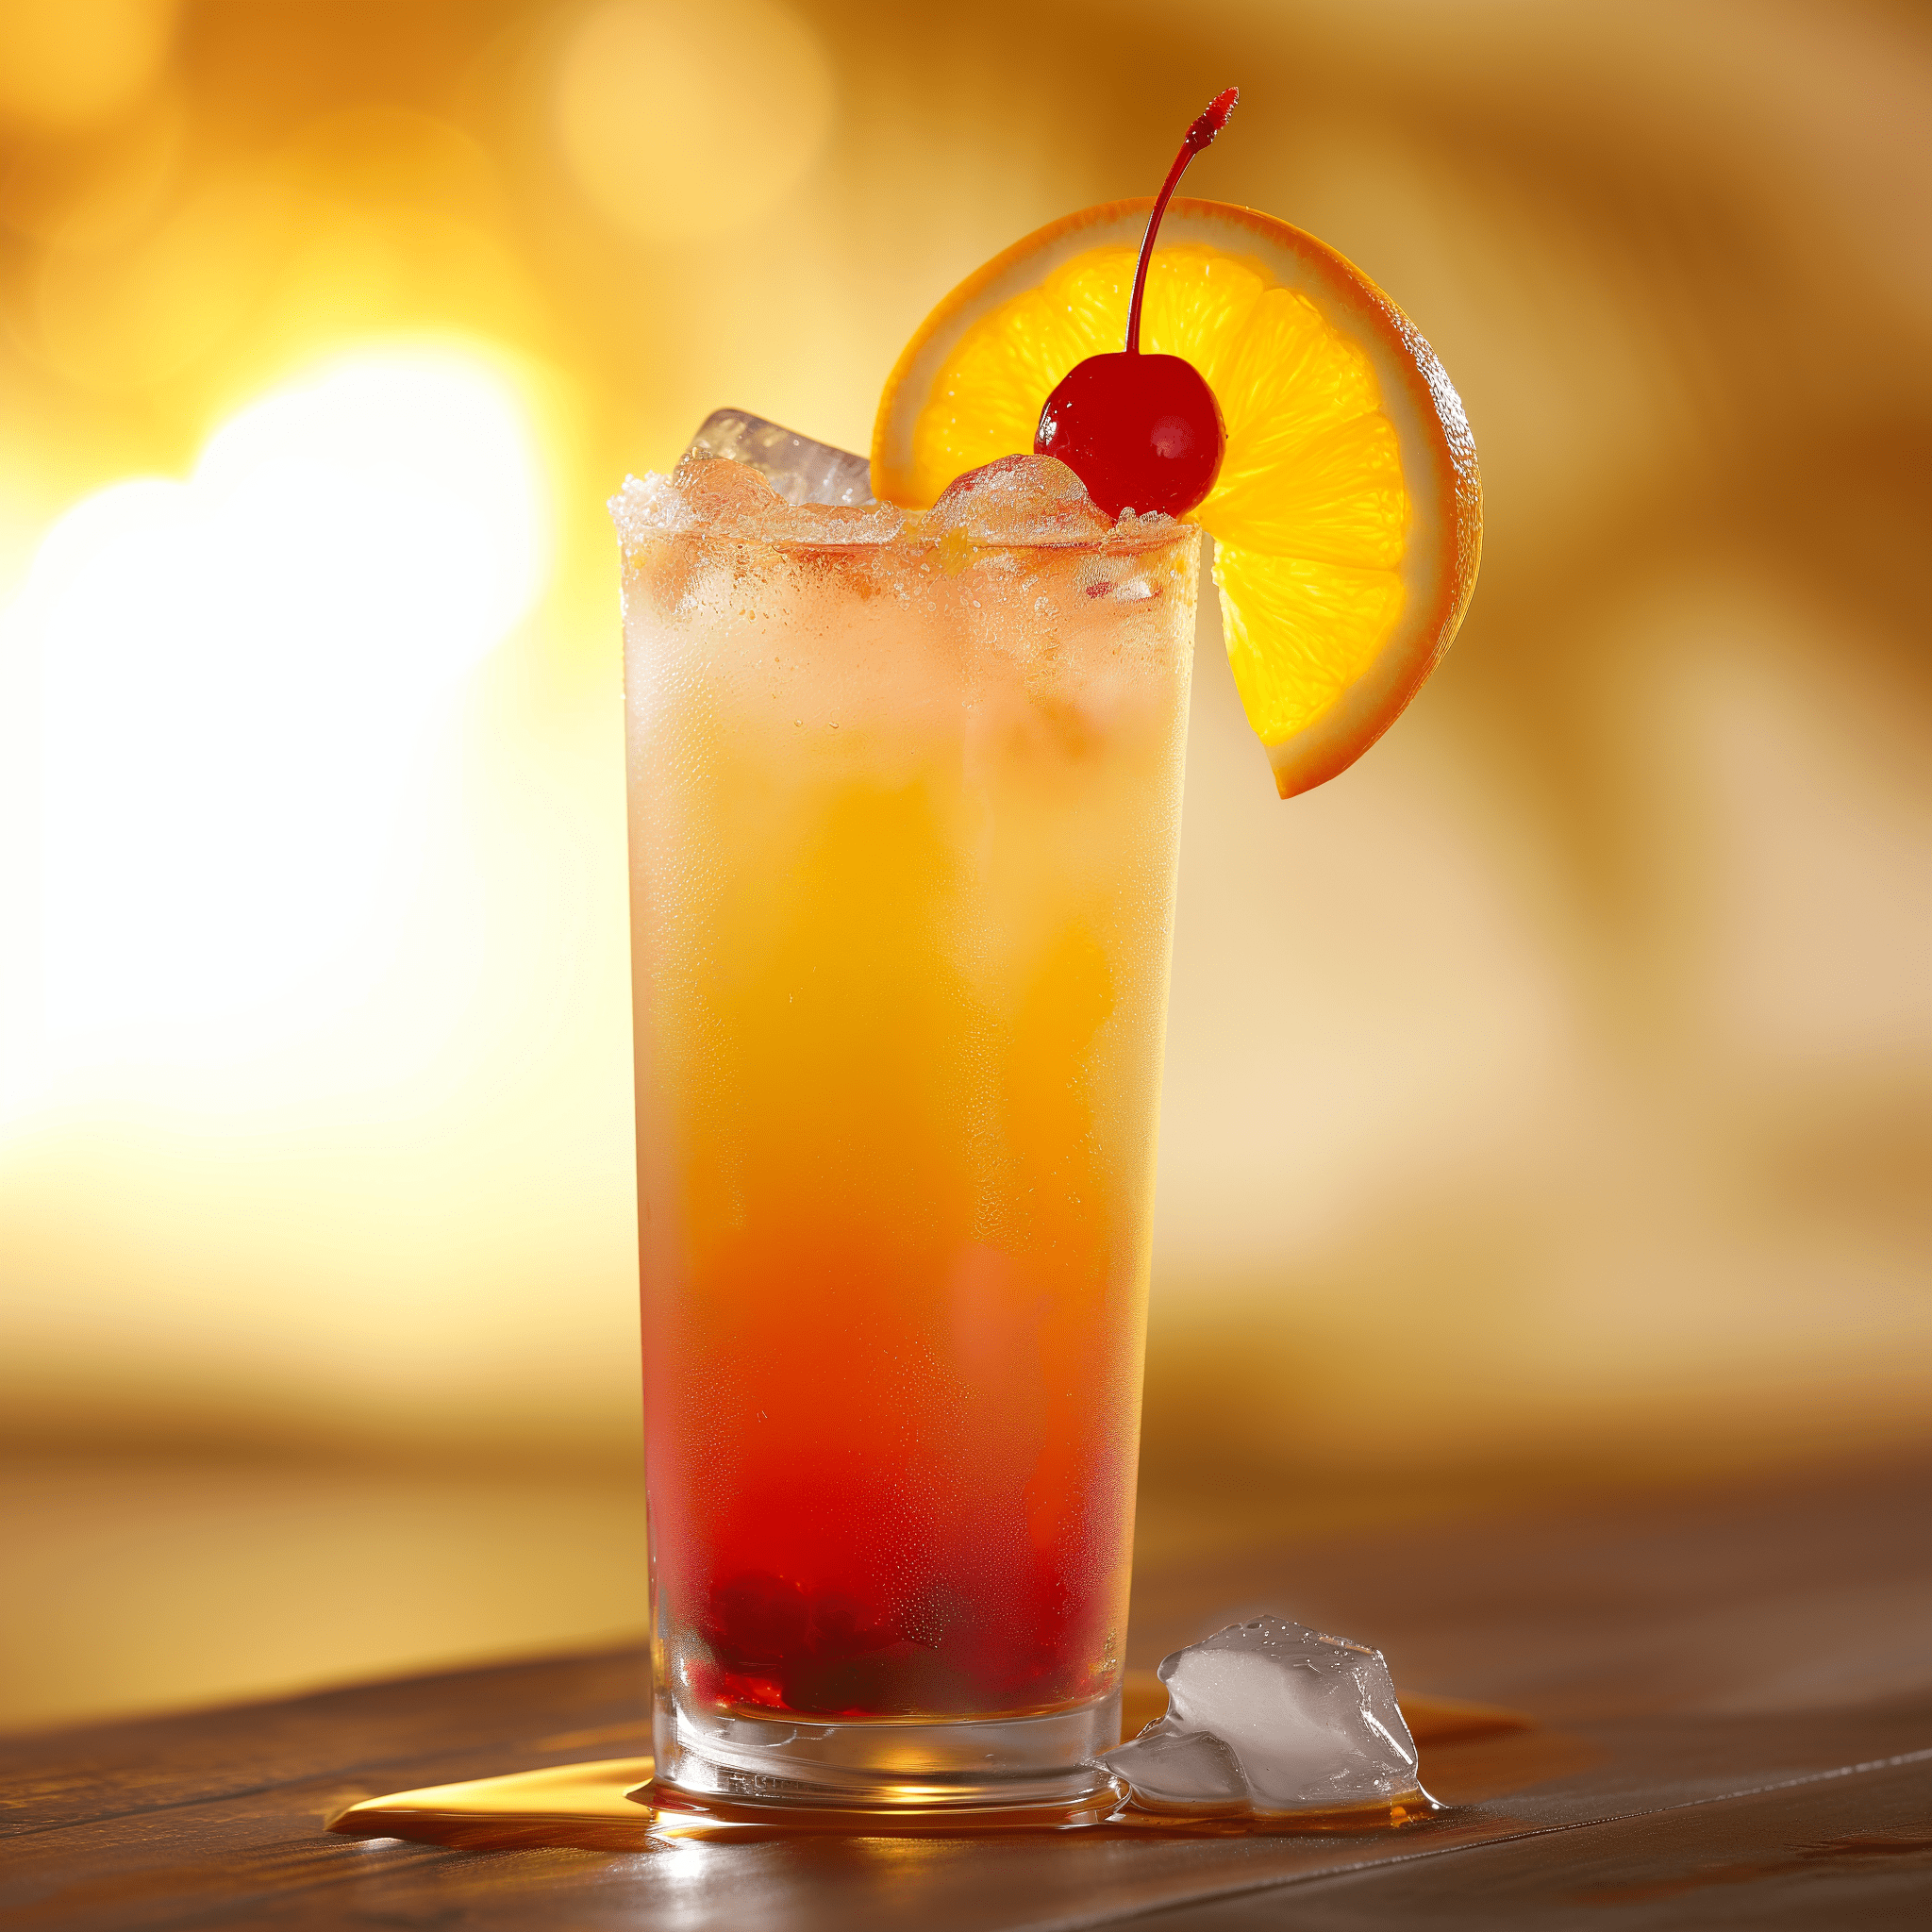 Sunrise Mocktail Receta - El Sunrise Mocktail tiene un perfil de sabor dulce y picante, con la frescura del jugo de naranja y la acidez de la granadina creando un equilibrio delicioso. La bebida es ligera y afrutada, con una complejidad sutil que proviene de la estratificación de sabores.